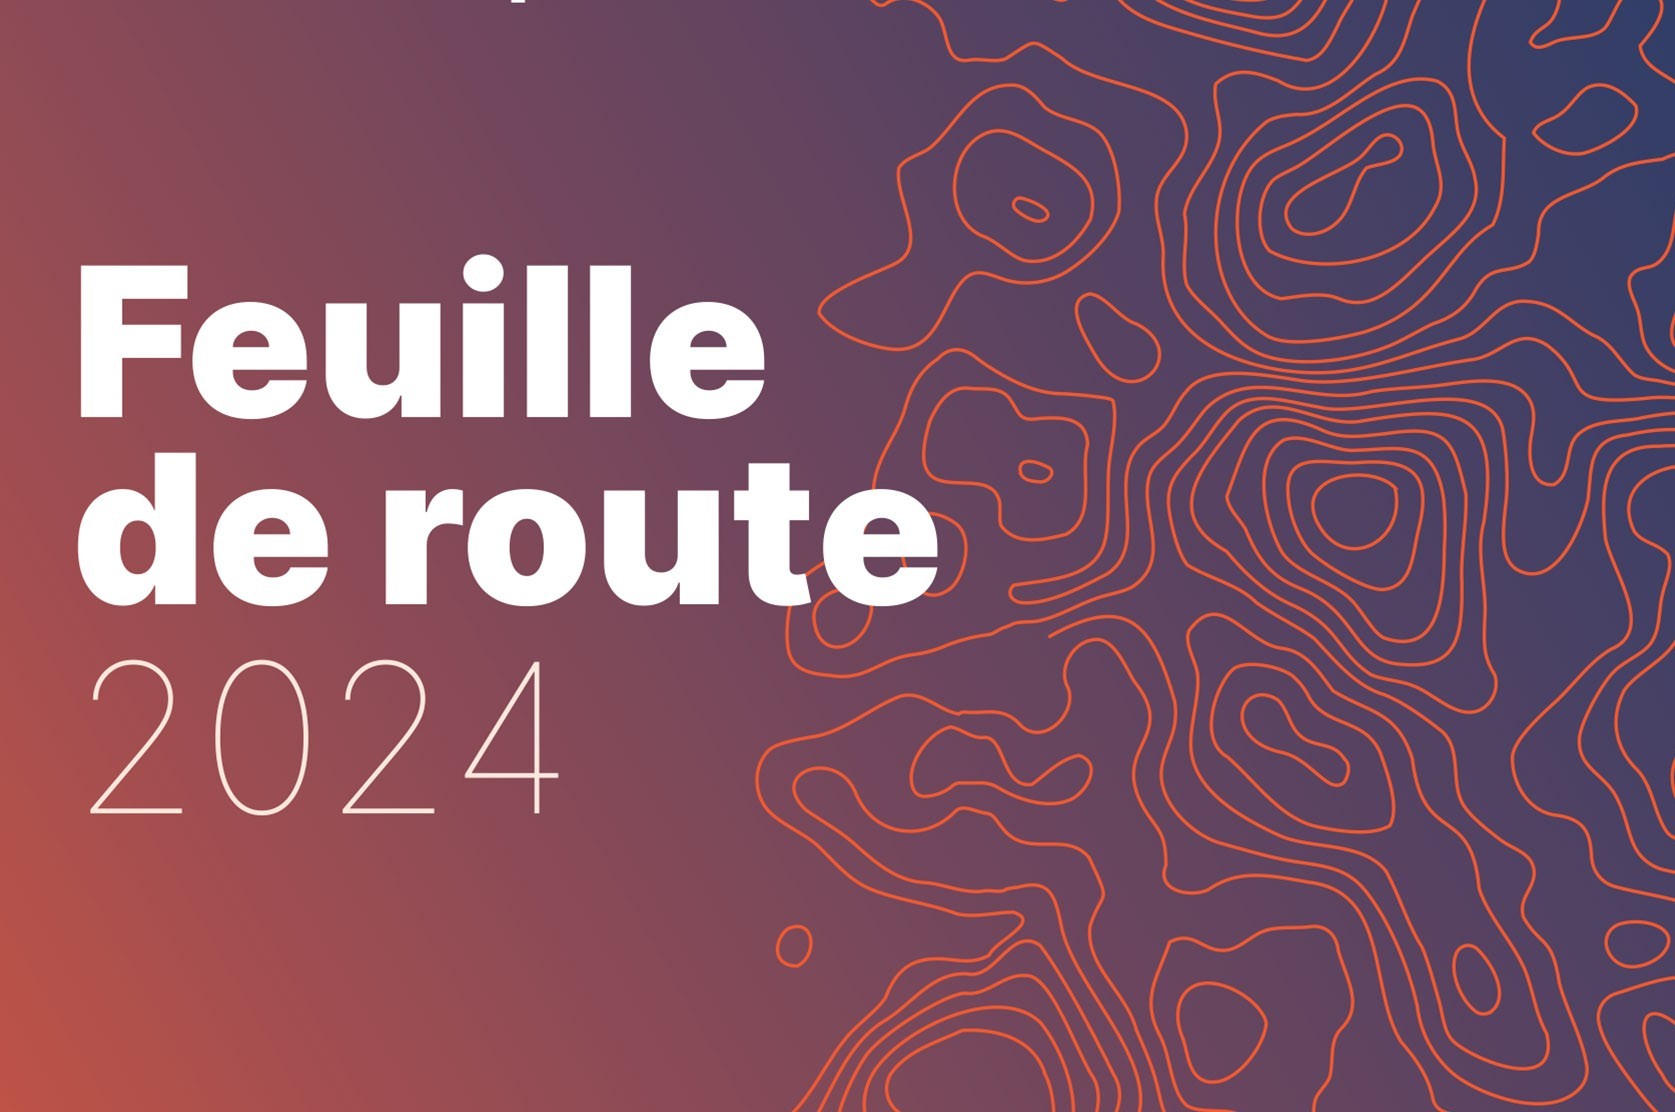 feuille_de_route_2024_couv2.jpg